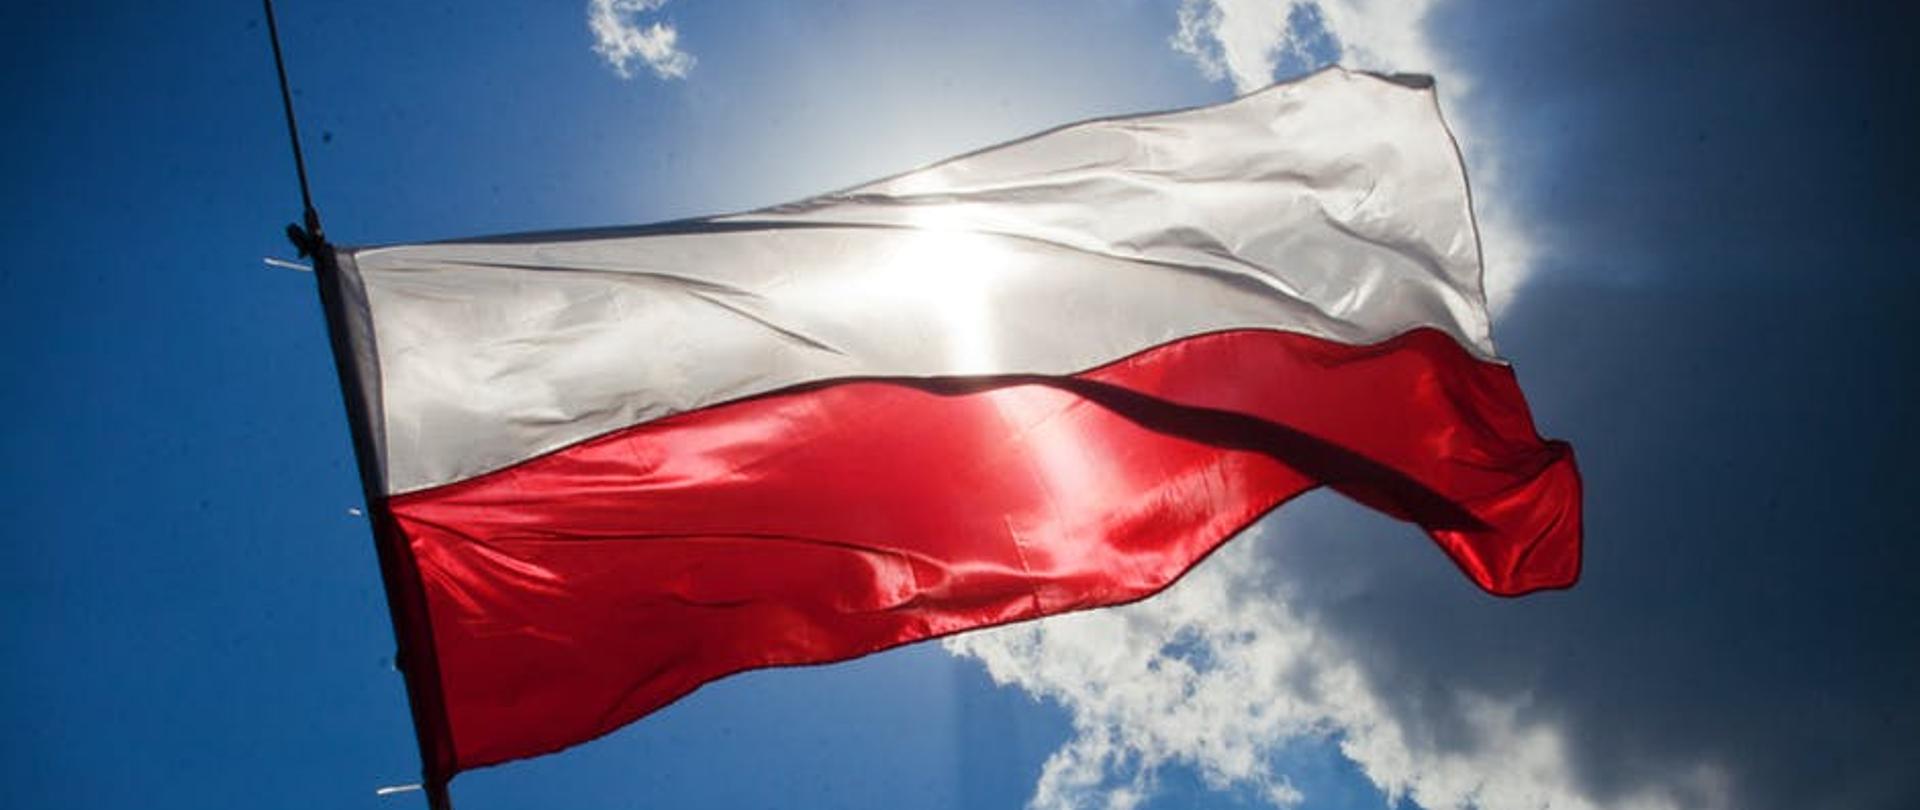 Flaga Polski na tle nieba z chmurami, przez którą przebijają promienie słońca.